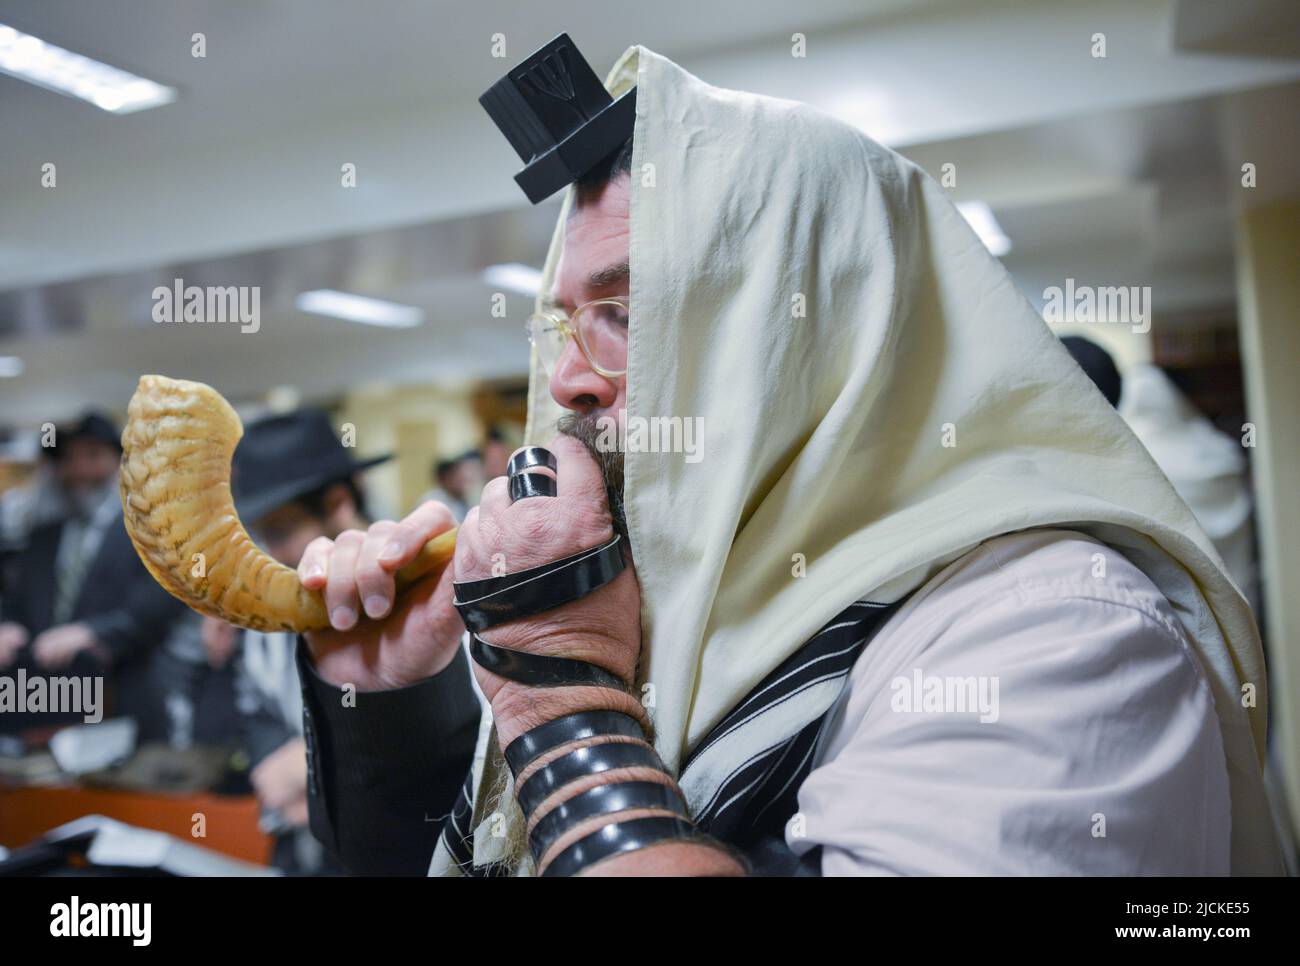 Nel mese precedente il Capodanno ebraico lo shofar viene soffiato al mattino per risvegliare i fedeli. A Crown Heights, Brooklyn, New York. Foto Stock